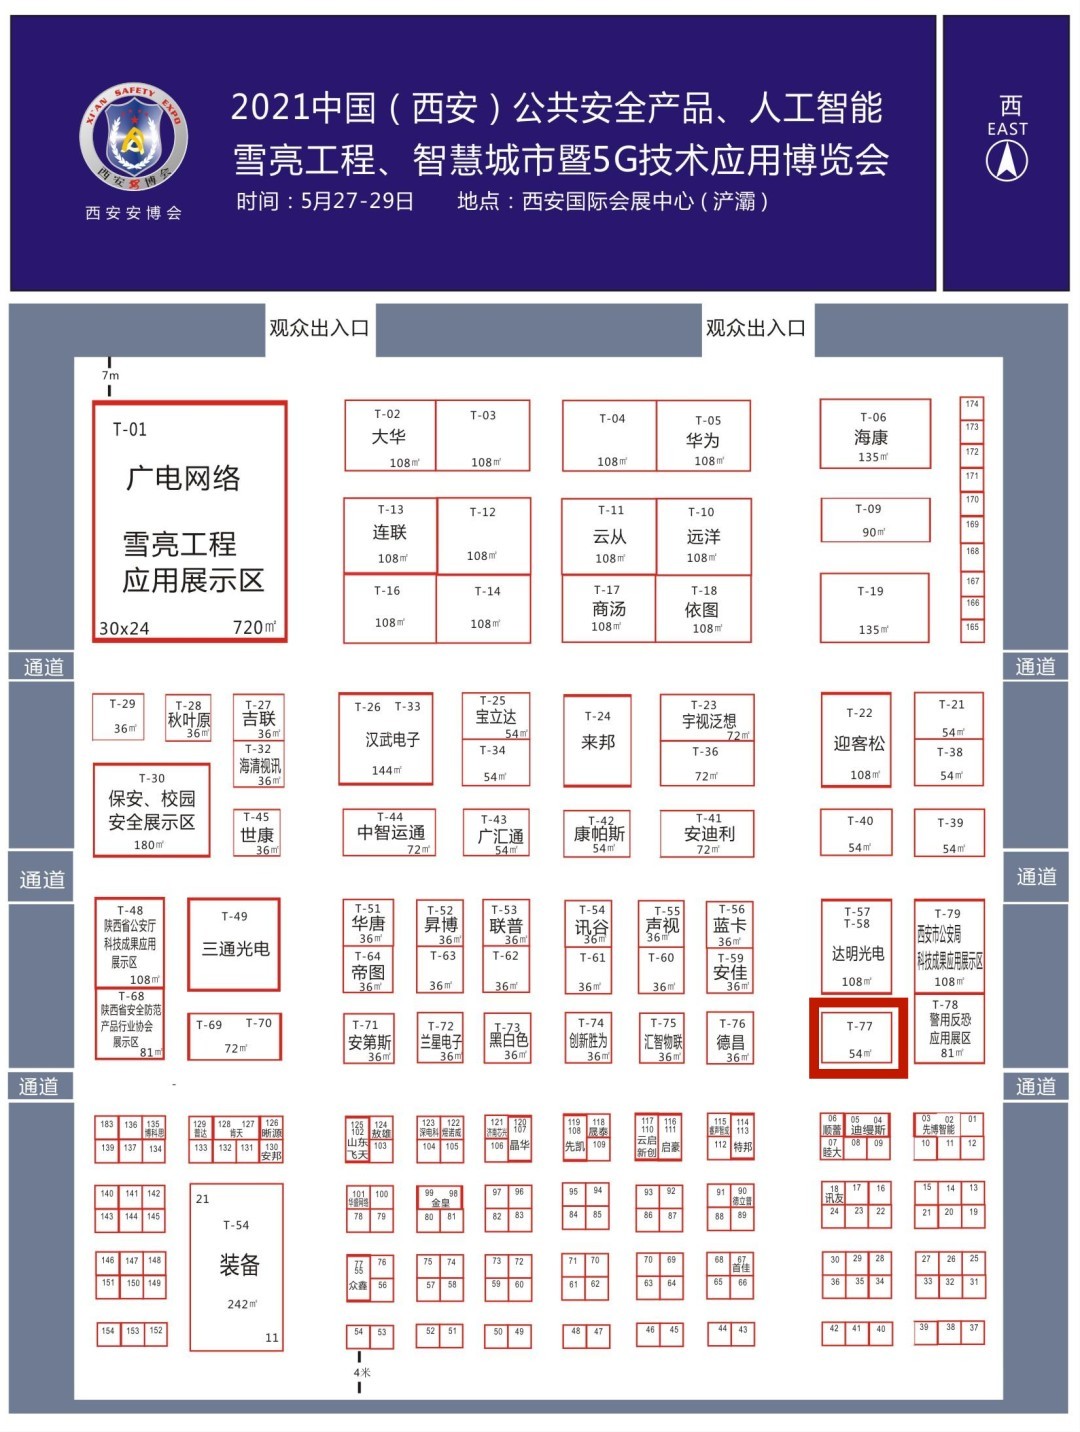 诚邀参观｜2021中国西安安博会新翔科技展位：T-77